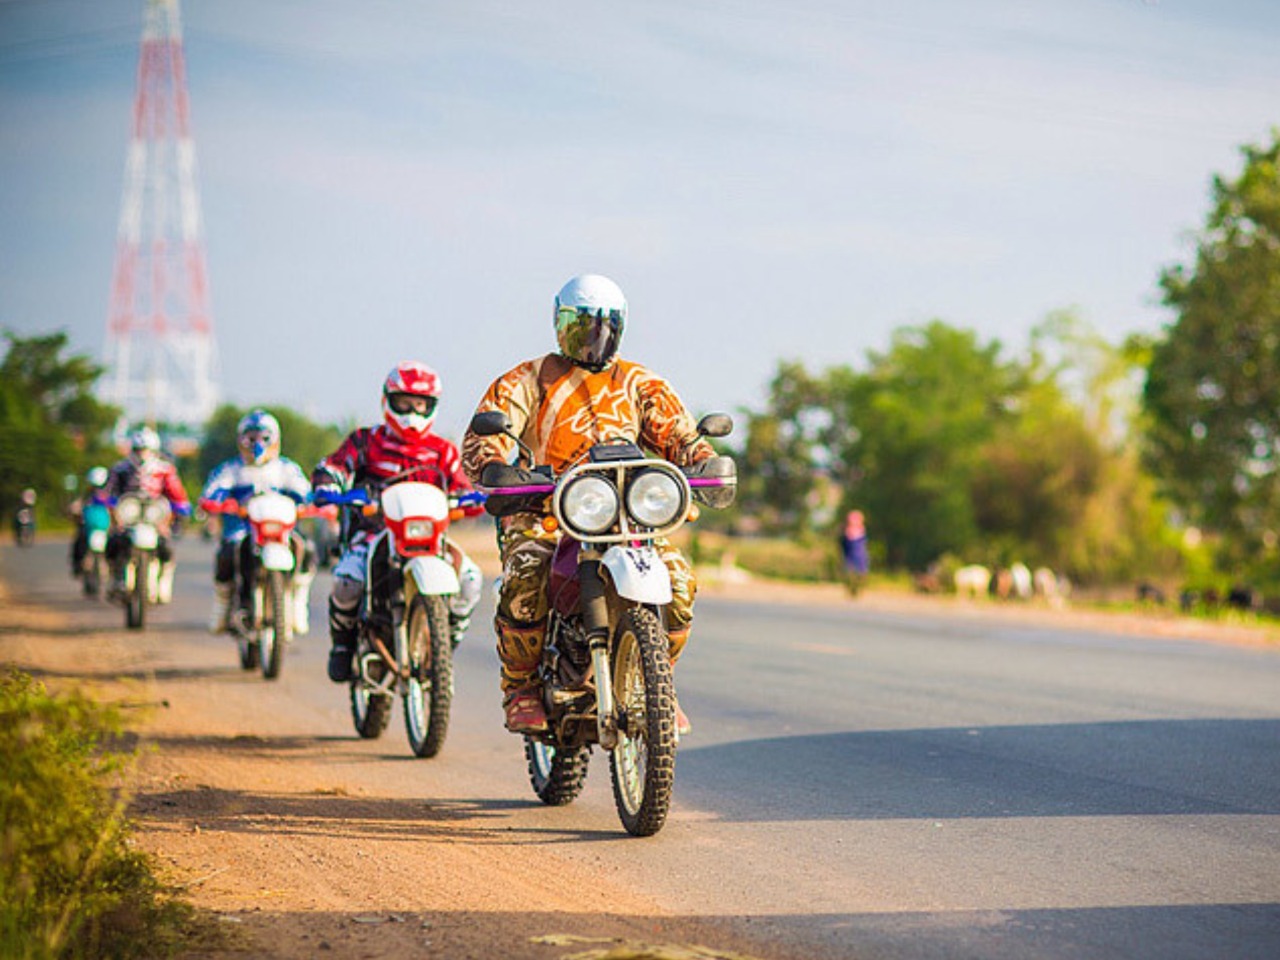 Многодневный мототур из Пномпеня в Банлунг | Цена 1800€, отзывы, описание экскурсии